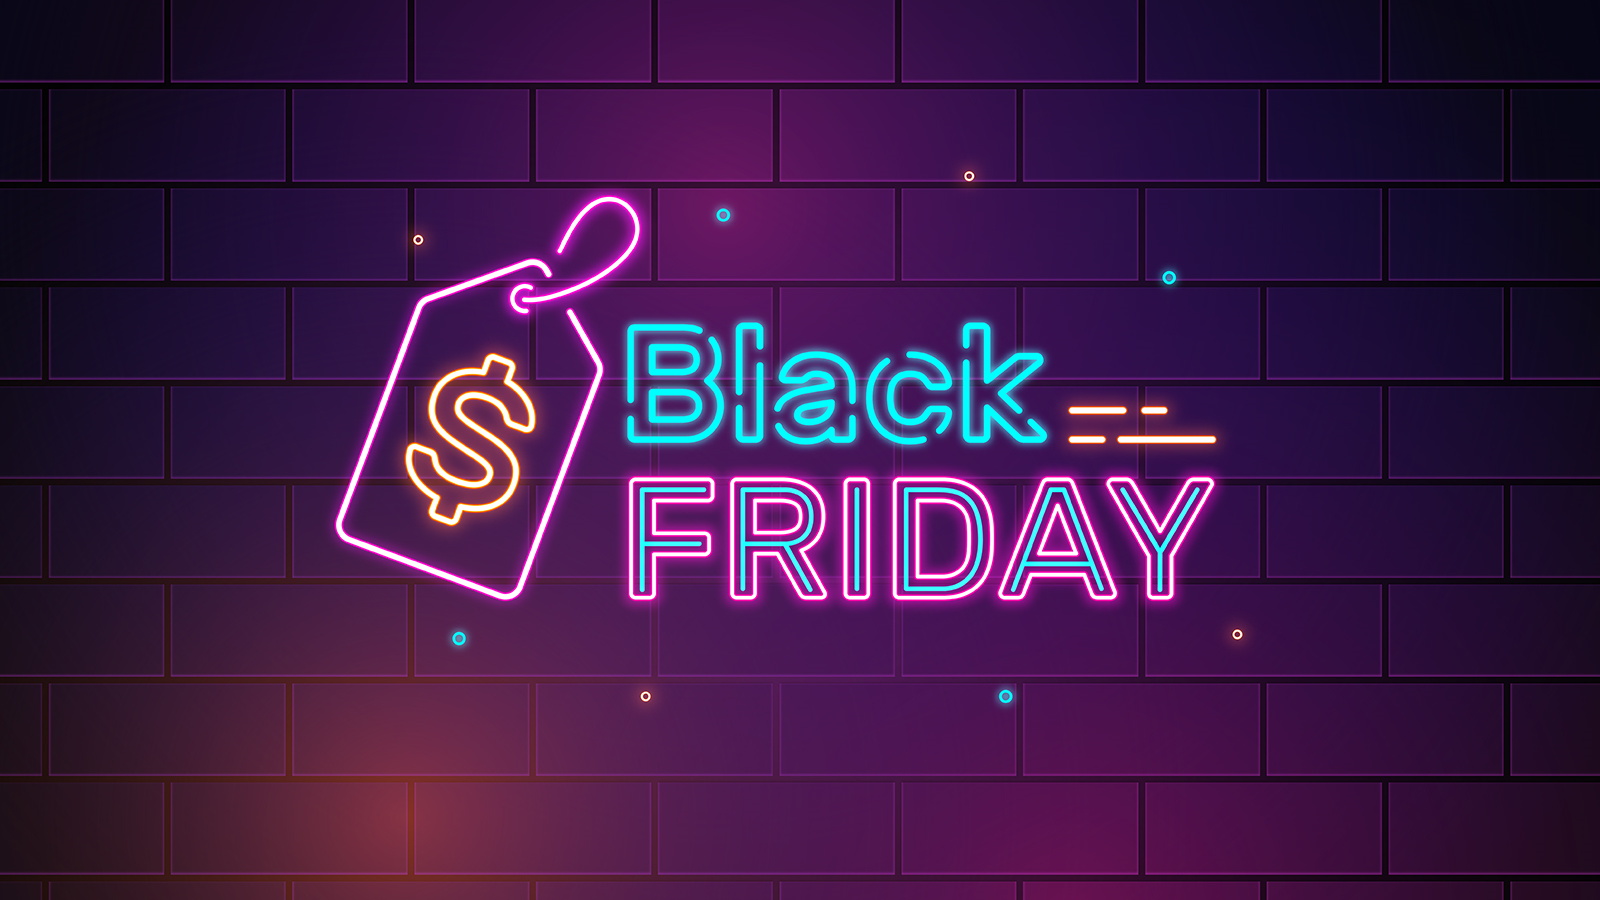 Black Friday 2019 Deals – Amazon, Best Buy & Walmart Deals!